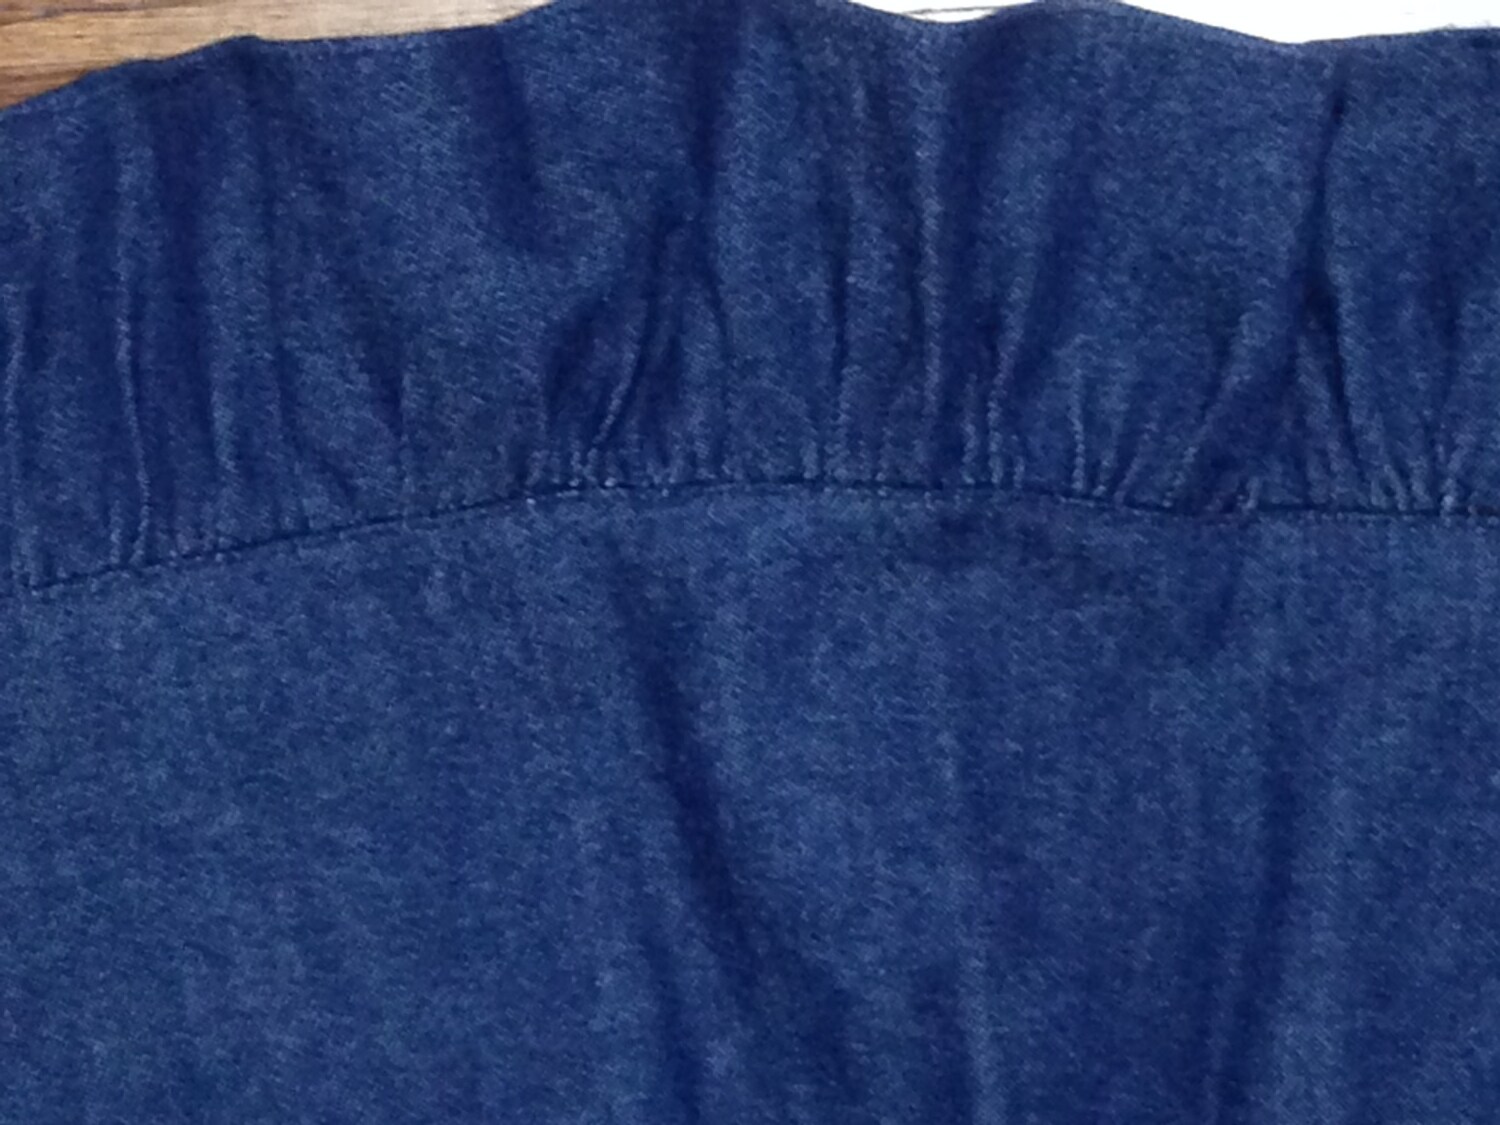 Girls Modest Skirt With Ruffle Elastic Waist Blue Denim - Etsy